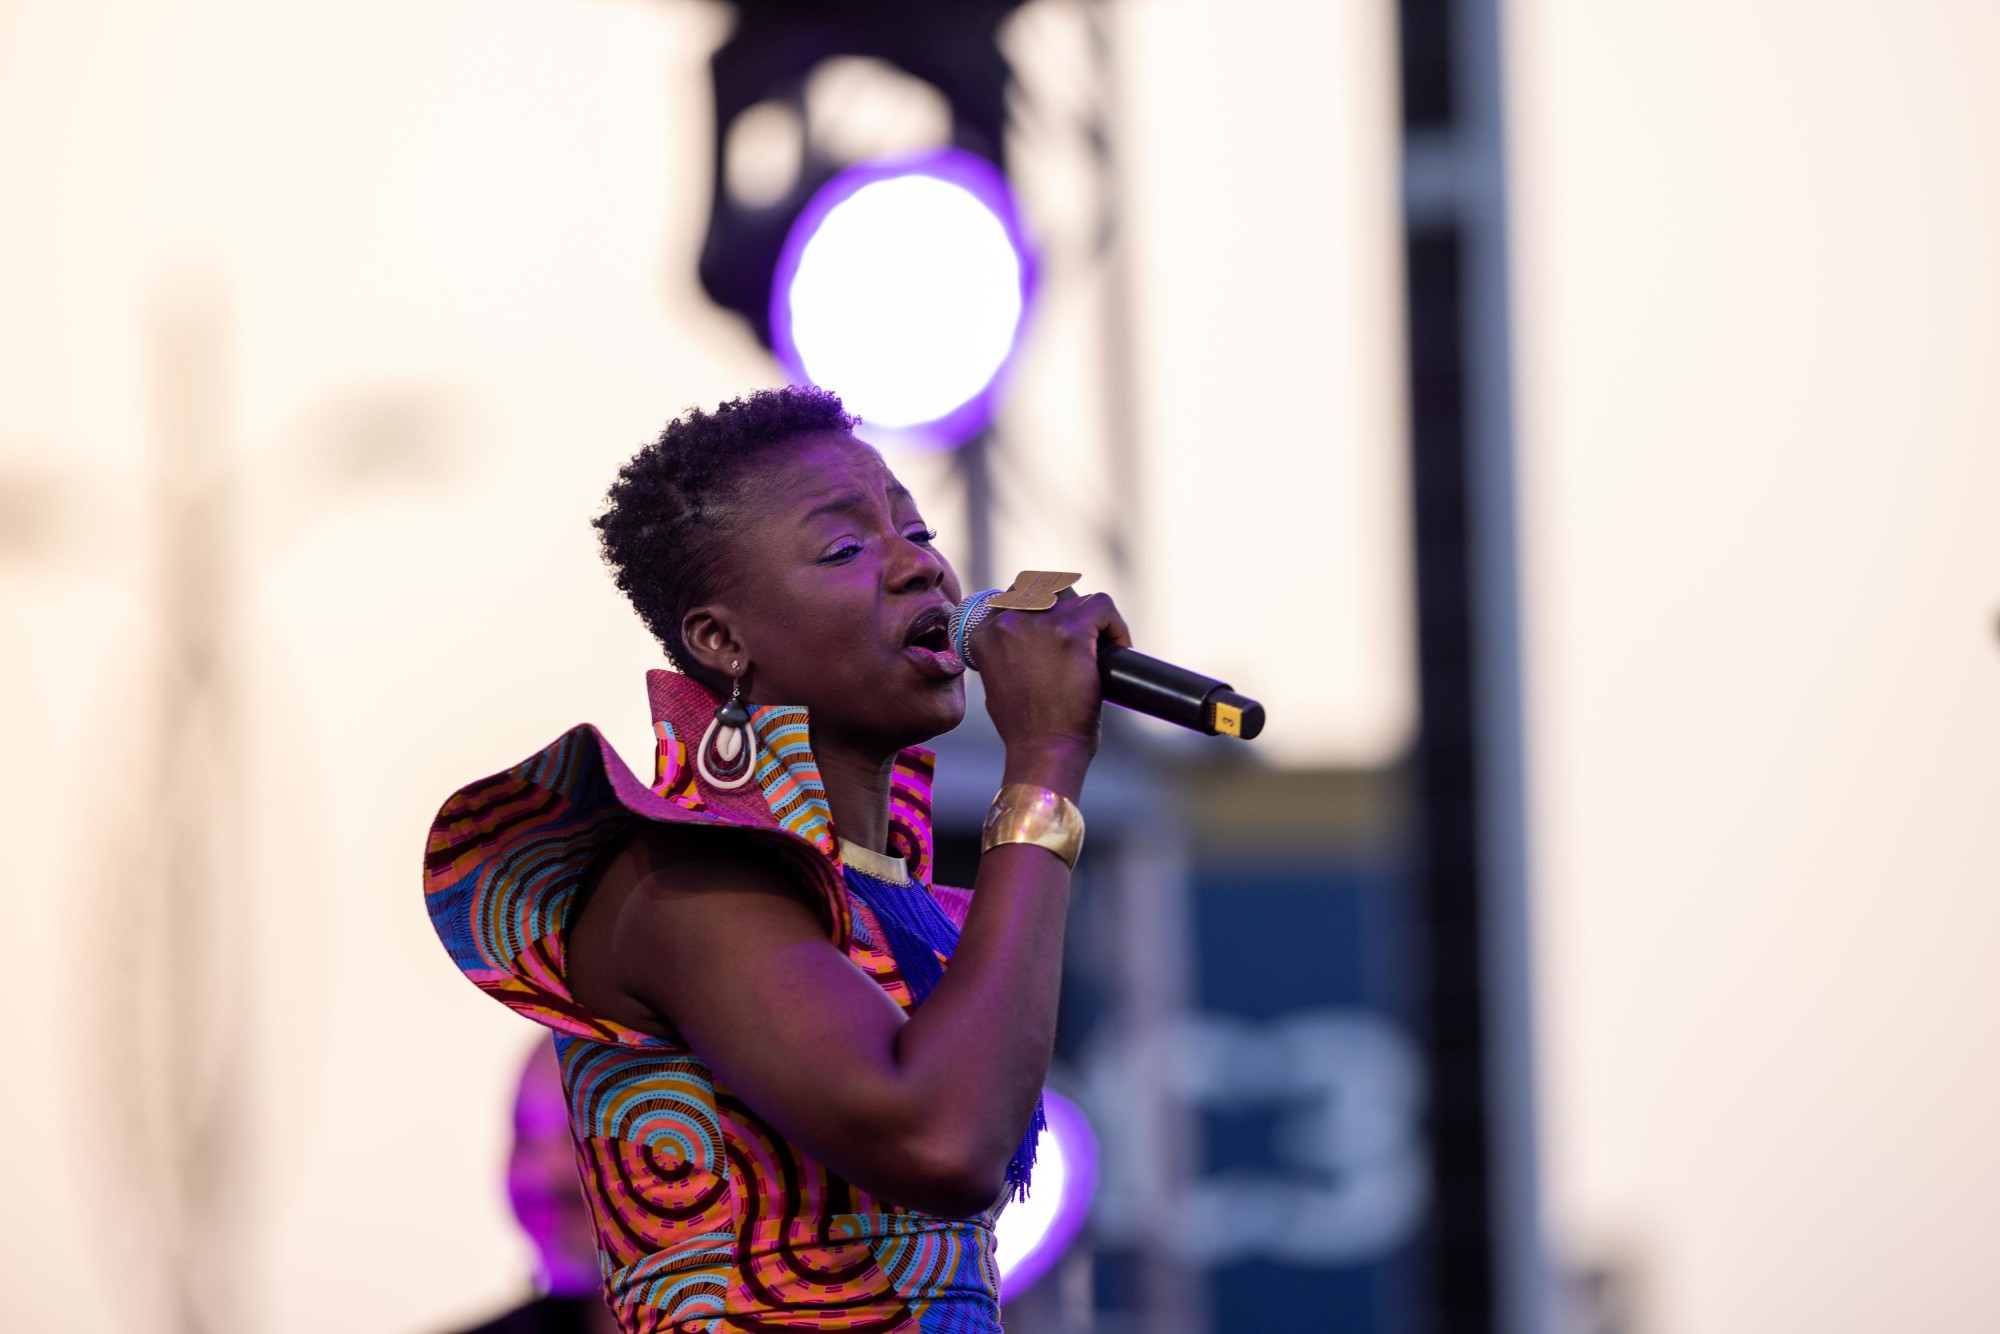 Les Amazones d’Afrique perform during We, The Women Festival at Festival Garden m60044